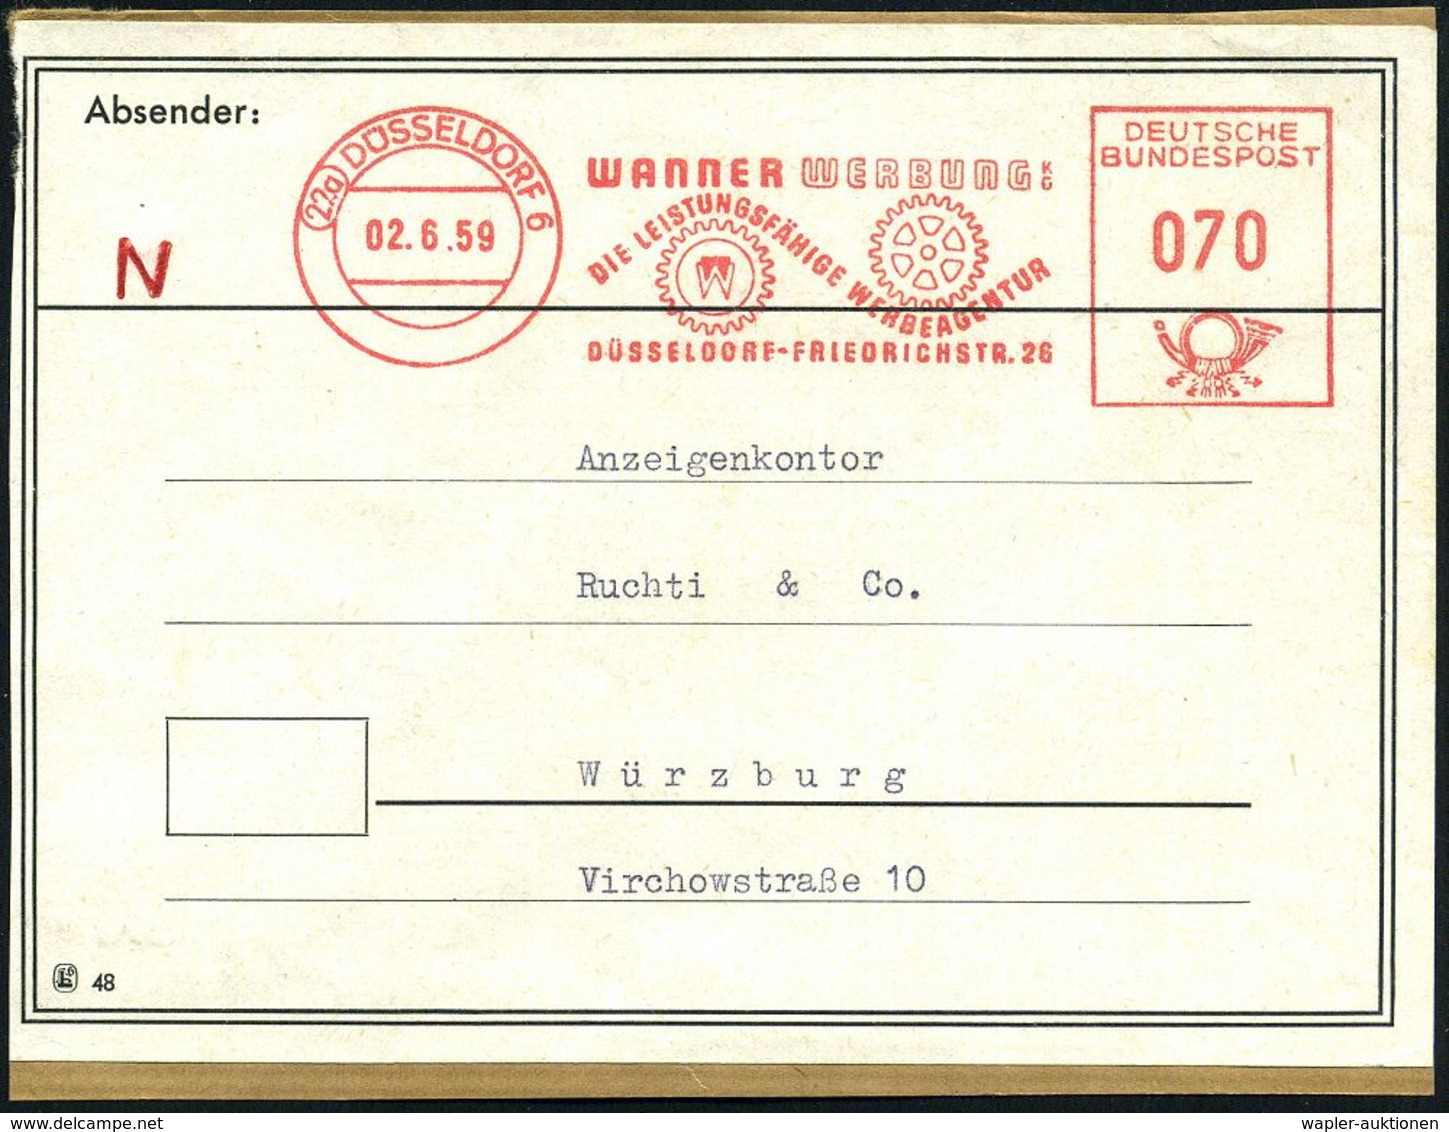 DRUCK / DRUCKTECHNIKEN / DRUCKMASCHINEN : (22a) DÜSSELDORF 6/ WANNER WERBUNG KG.. 1959 (2.6.) AFS 070 Pf. (2 Druck-Zahnr - Ohne Zuordnung